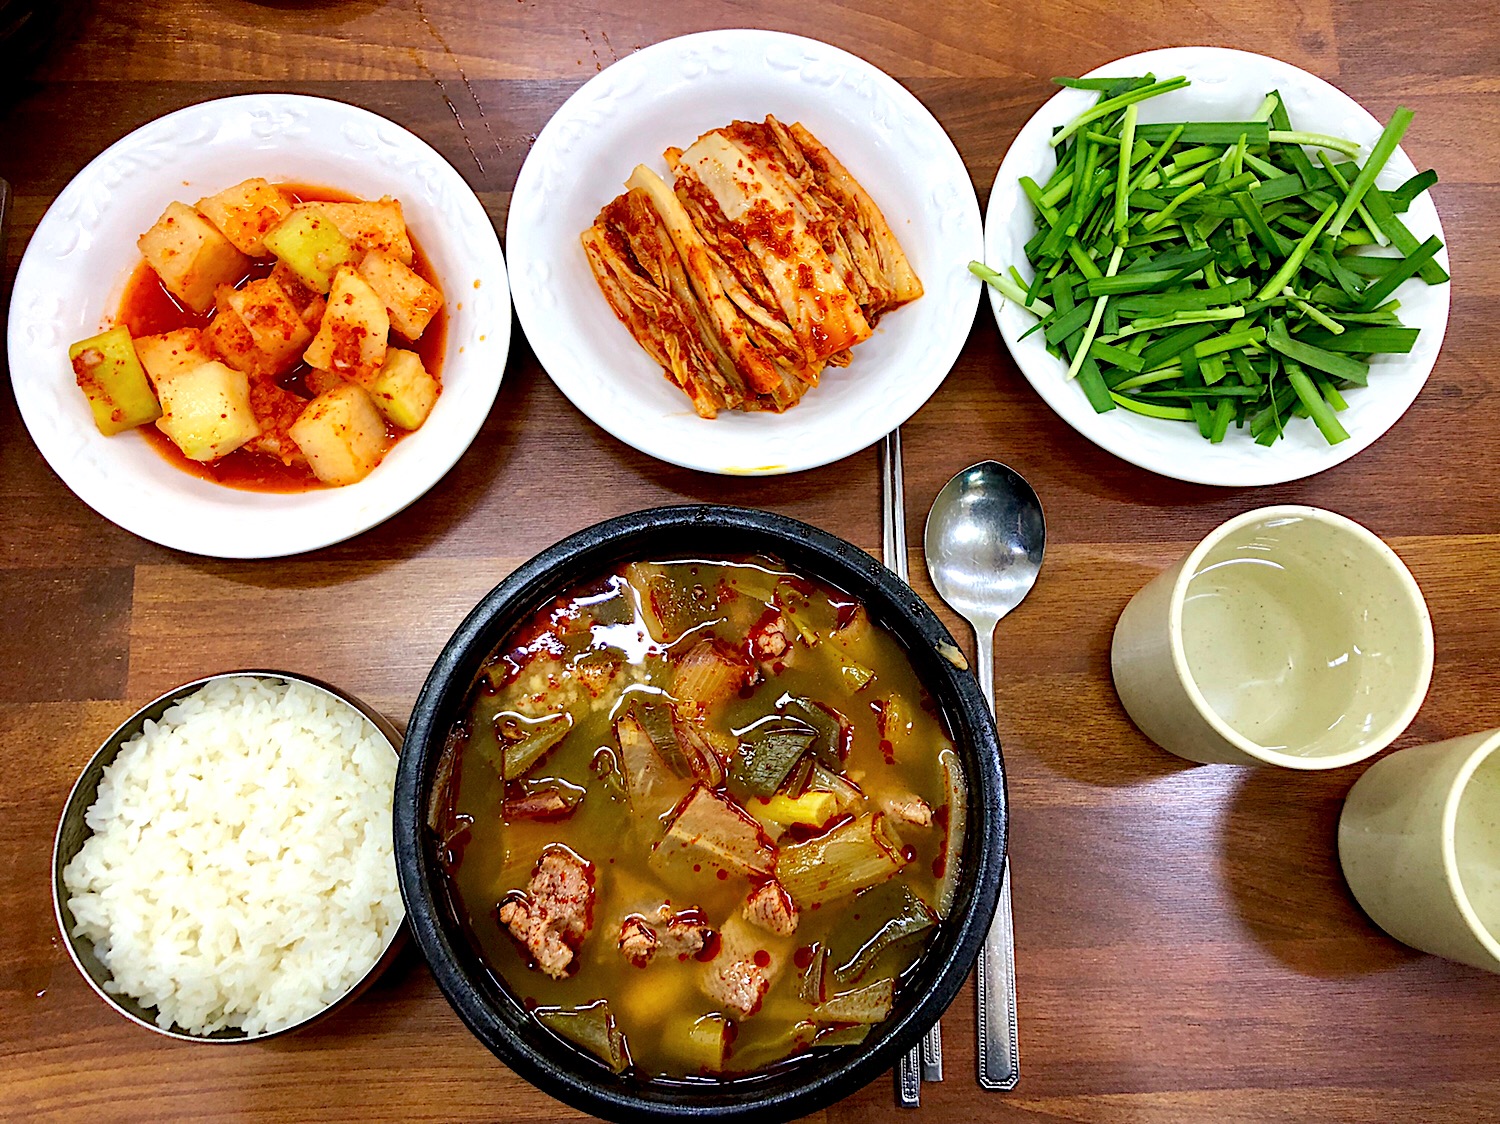 思い出の料理 韓国の 大邱 の名物であるタロクッパ 美味しかったですクッパ 韓国料理 Hi Ni Snapdish スナップディッシュ Id 1e0x8a